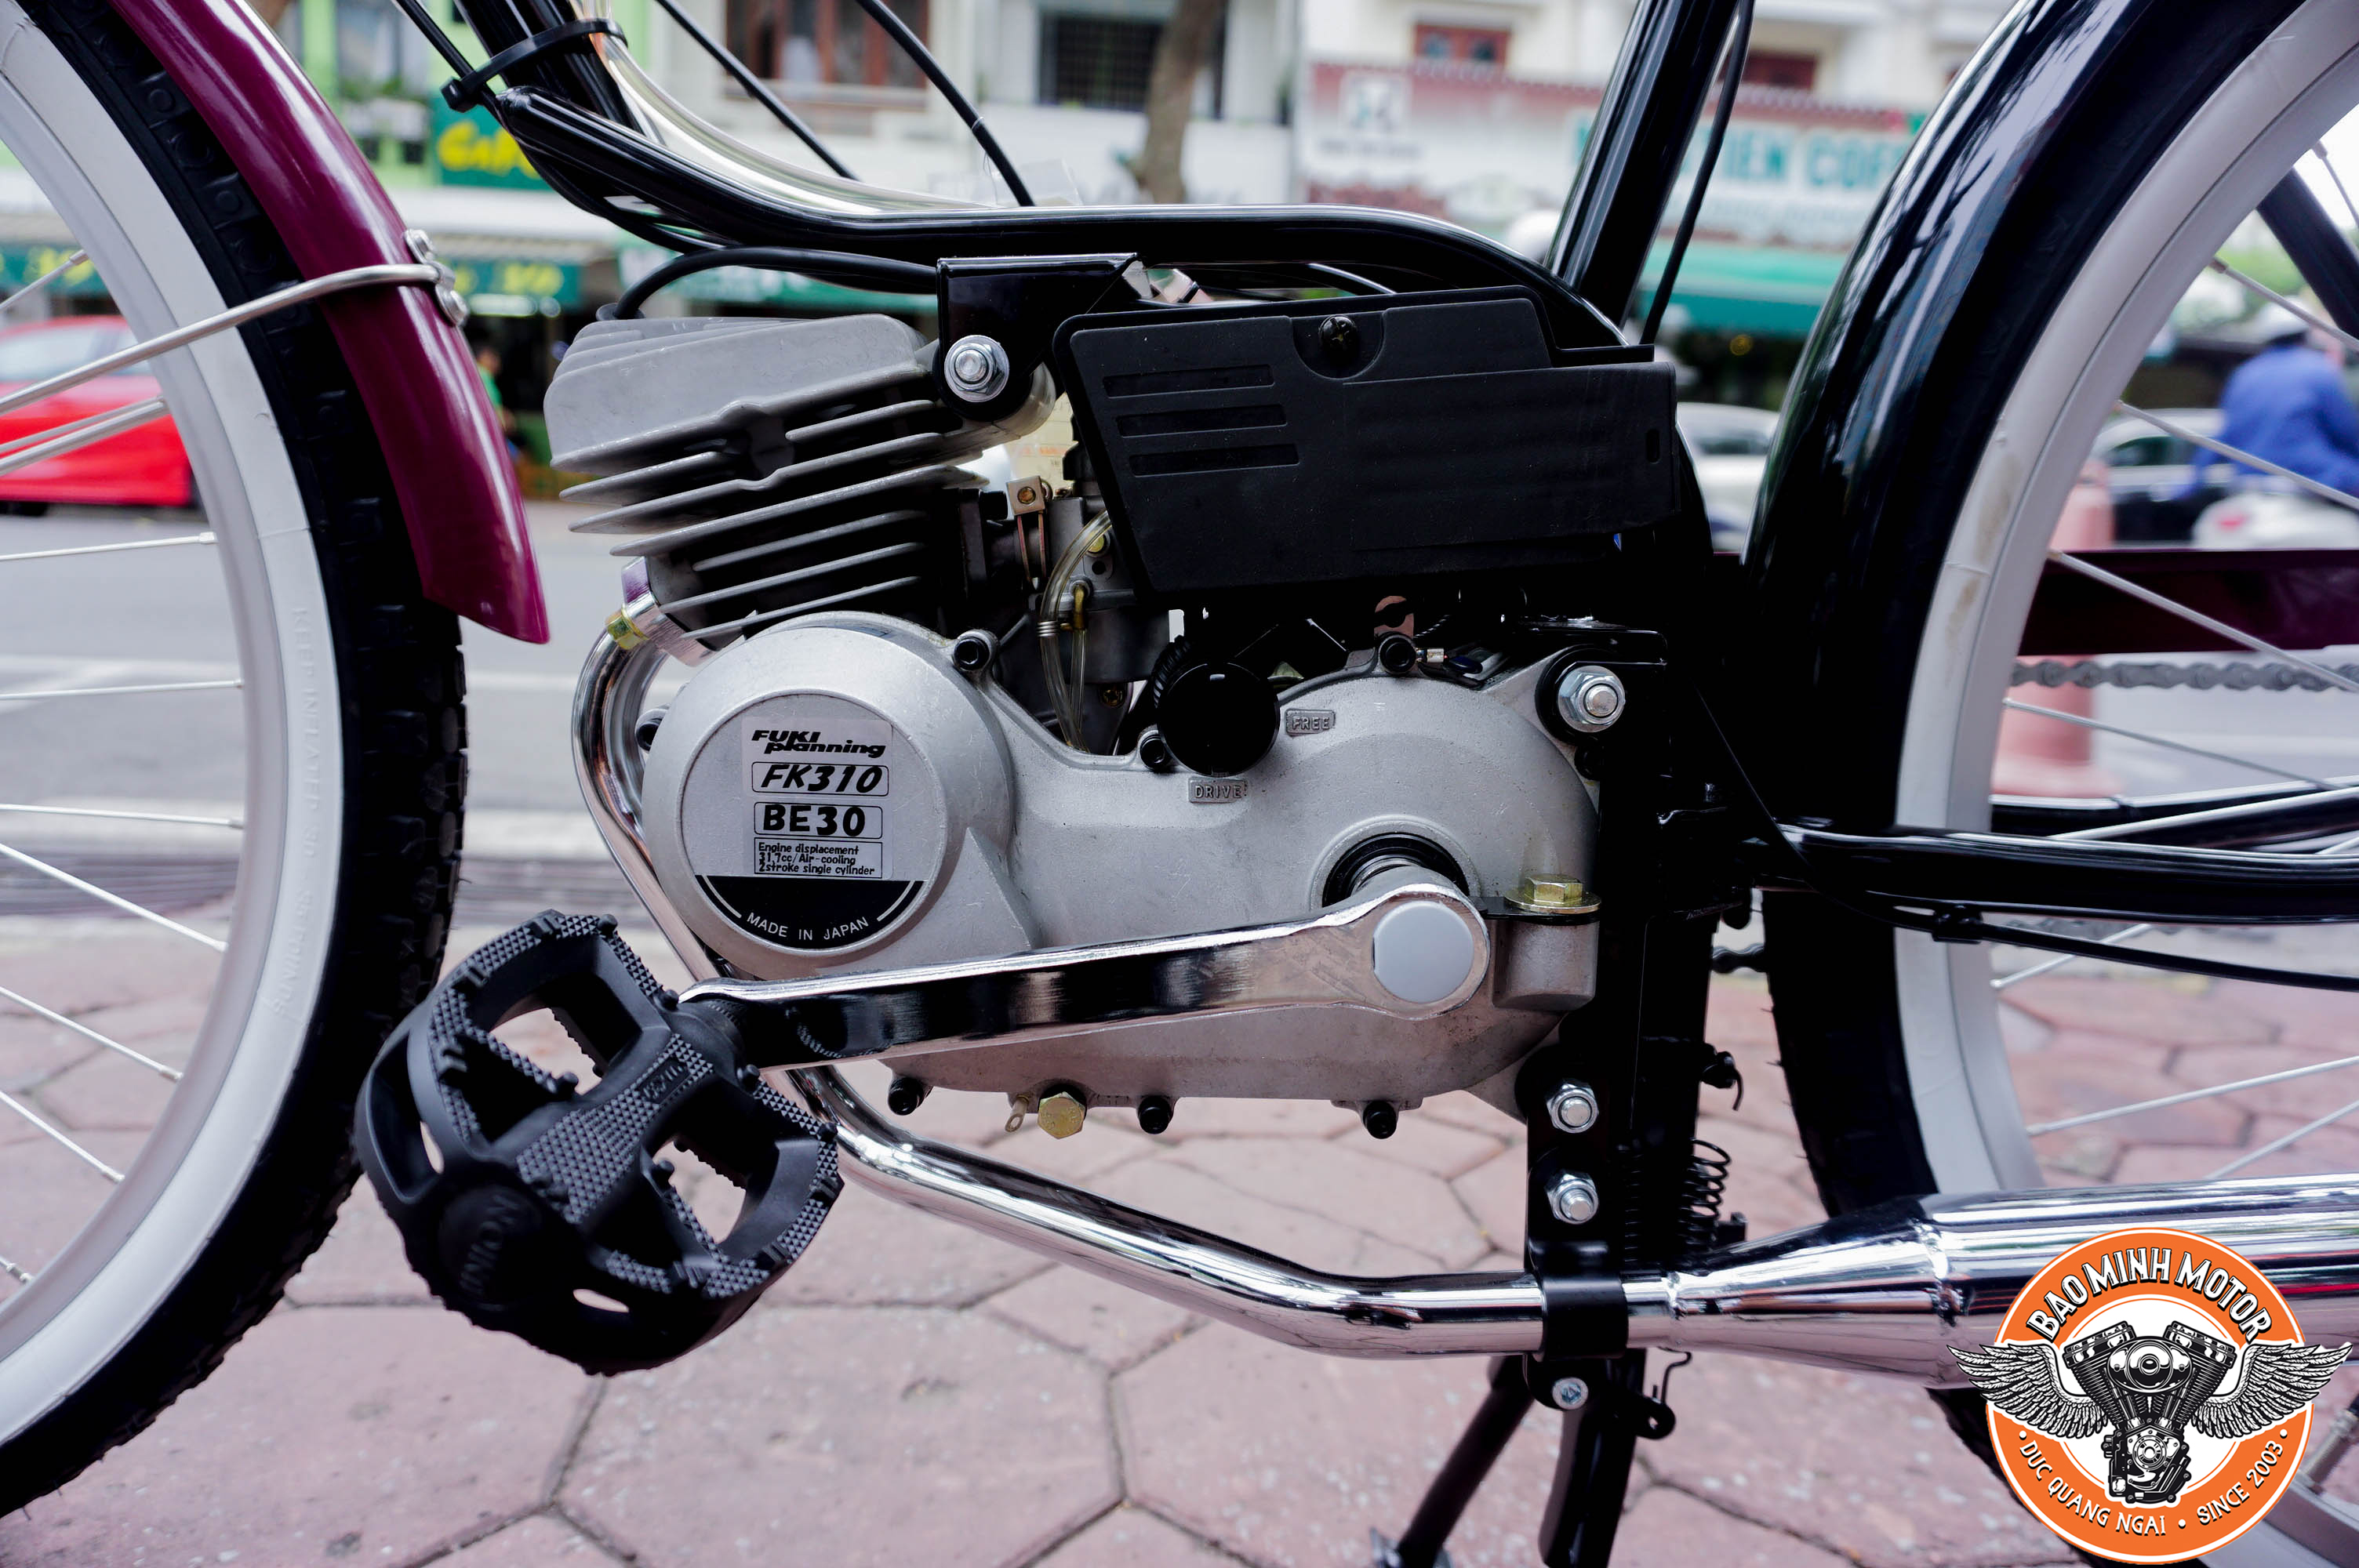 5 mẫu xe máy cổ đã trở thành huyền thoại xe ở Việt Nam  BlogAnChoi